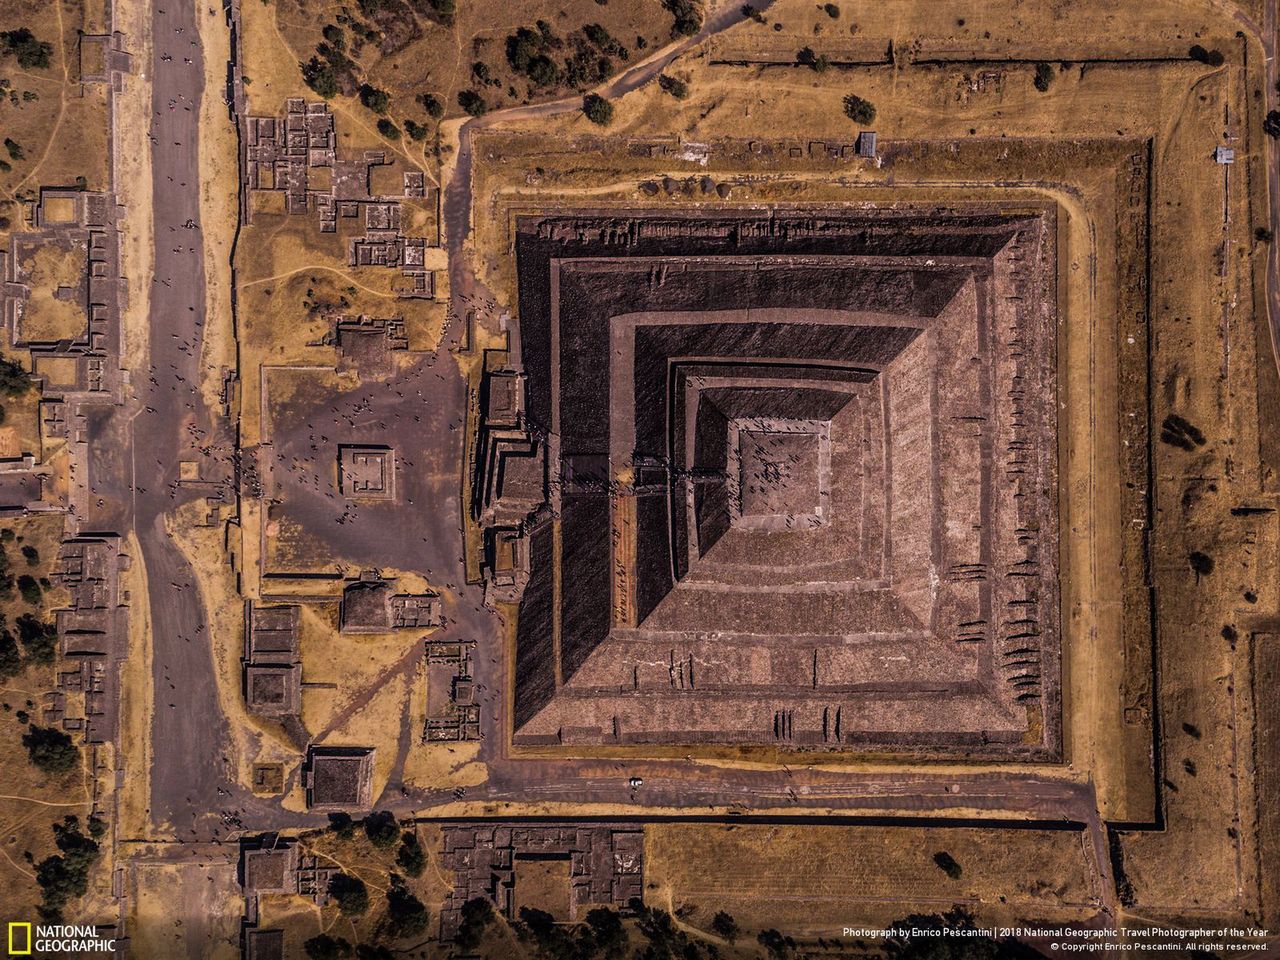 Na drugim miejscu w kategorii Miasta znalazło się zdjęcie zatytułowane "Geometra słońca", którego autorem jest Enrico Pesantini. Widać na nim połowicznie oświetloną przez wschodzące słońce piramidę w Teotihuacan.